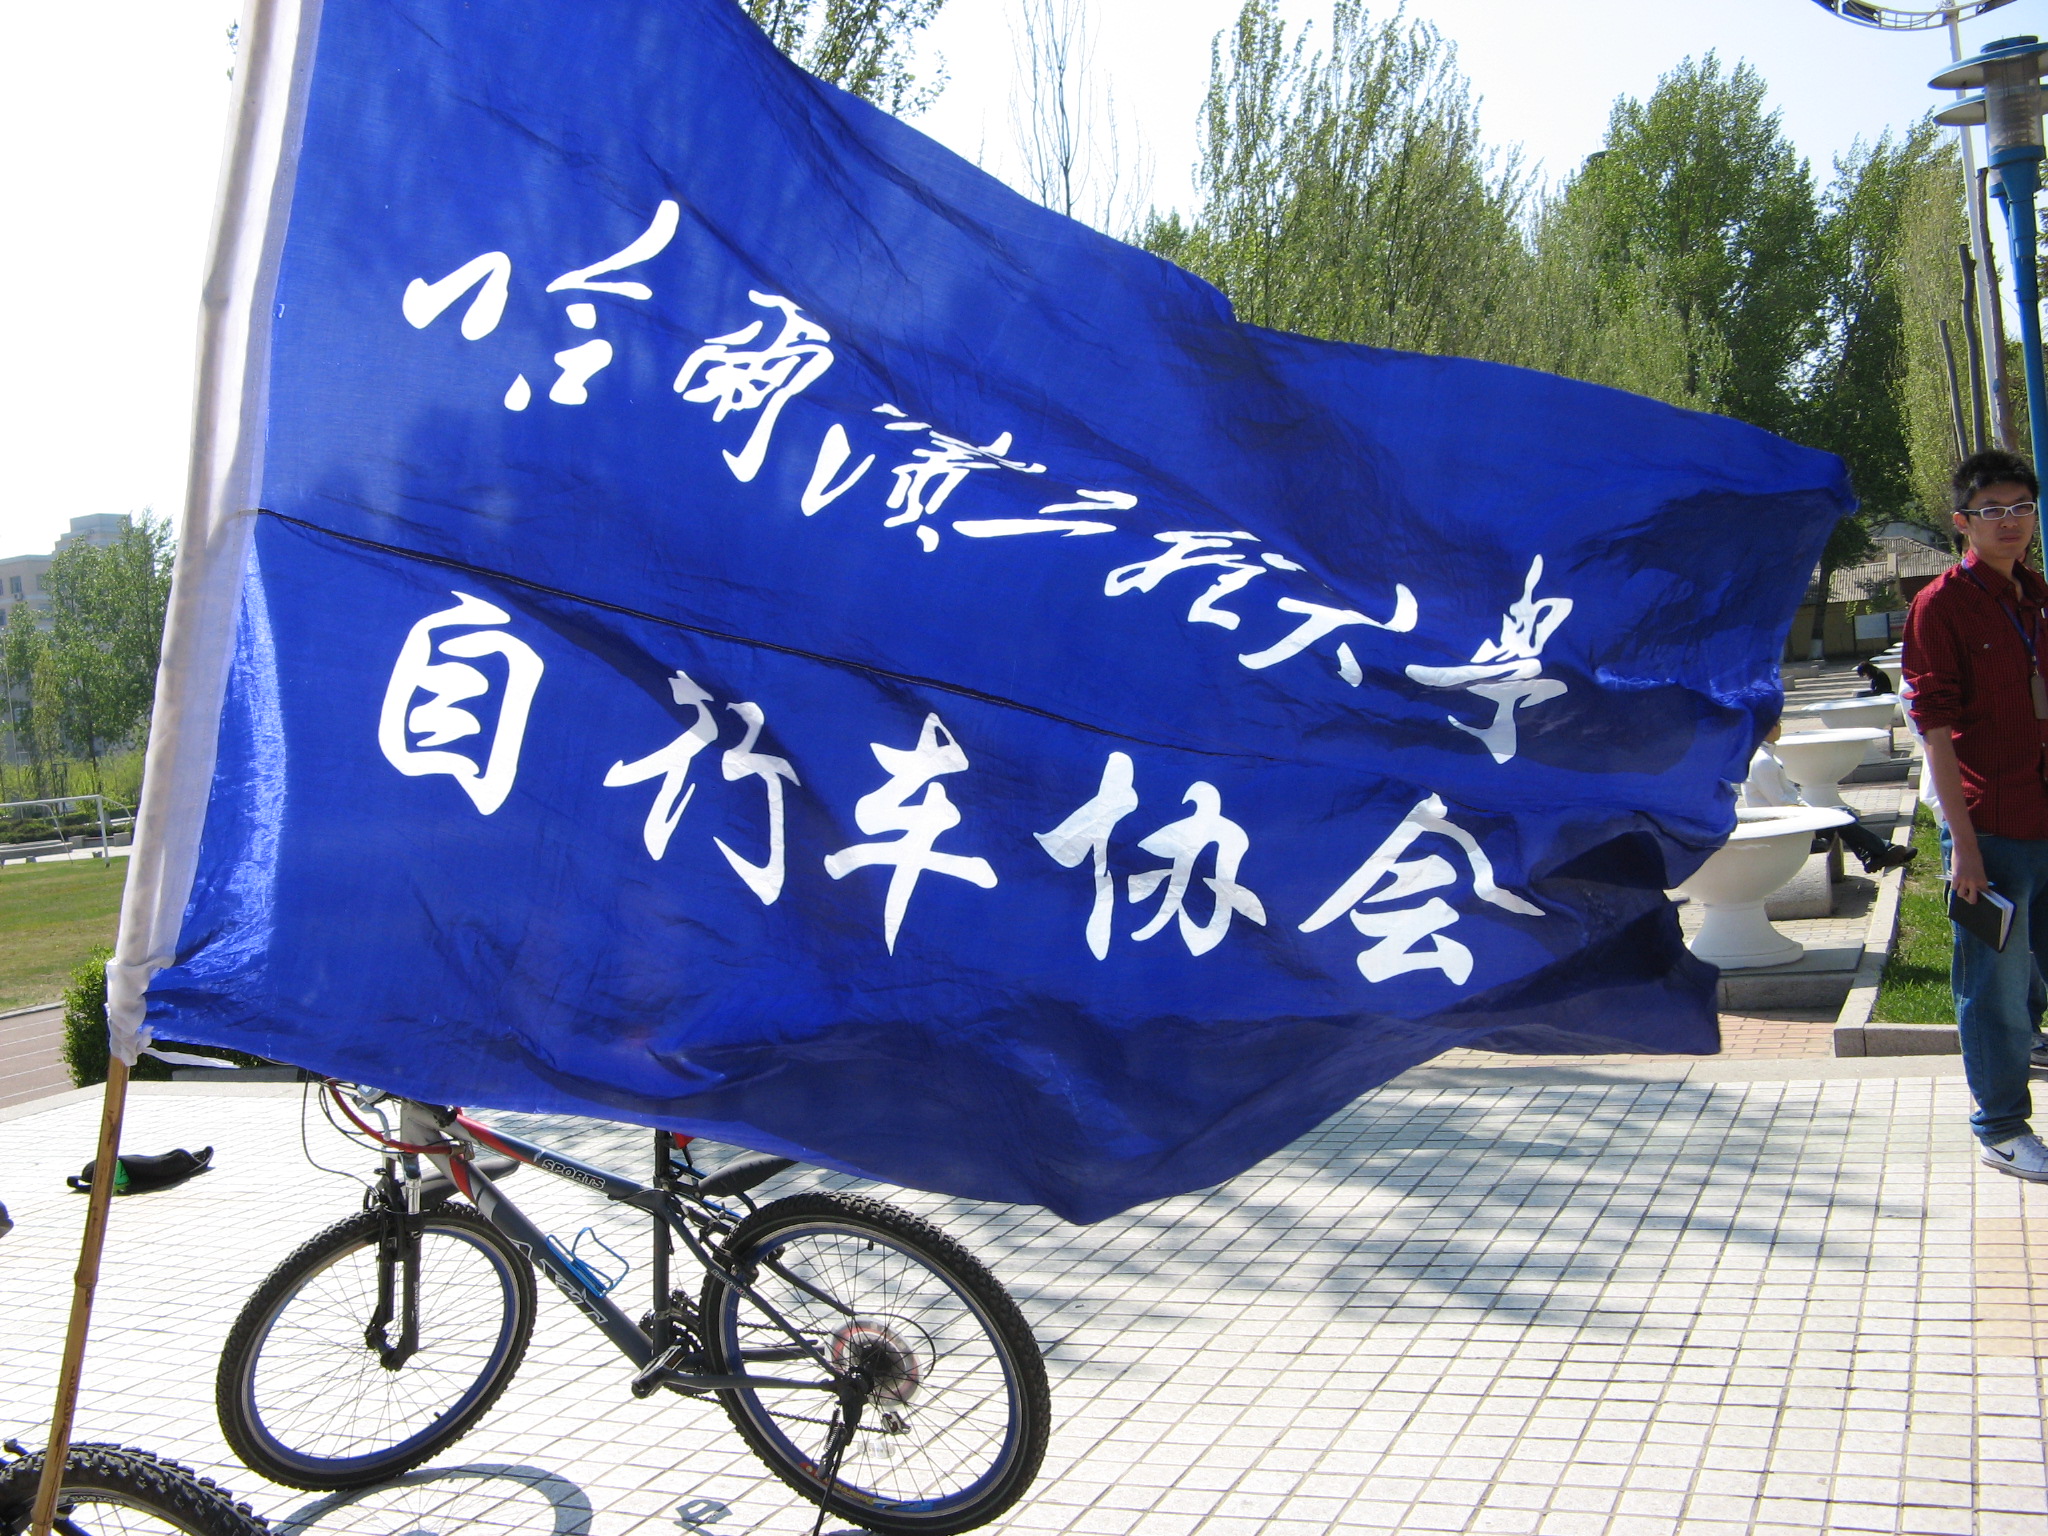 哈爾濱工程大學腳踏車協會會旗